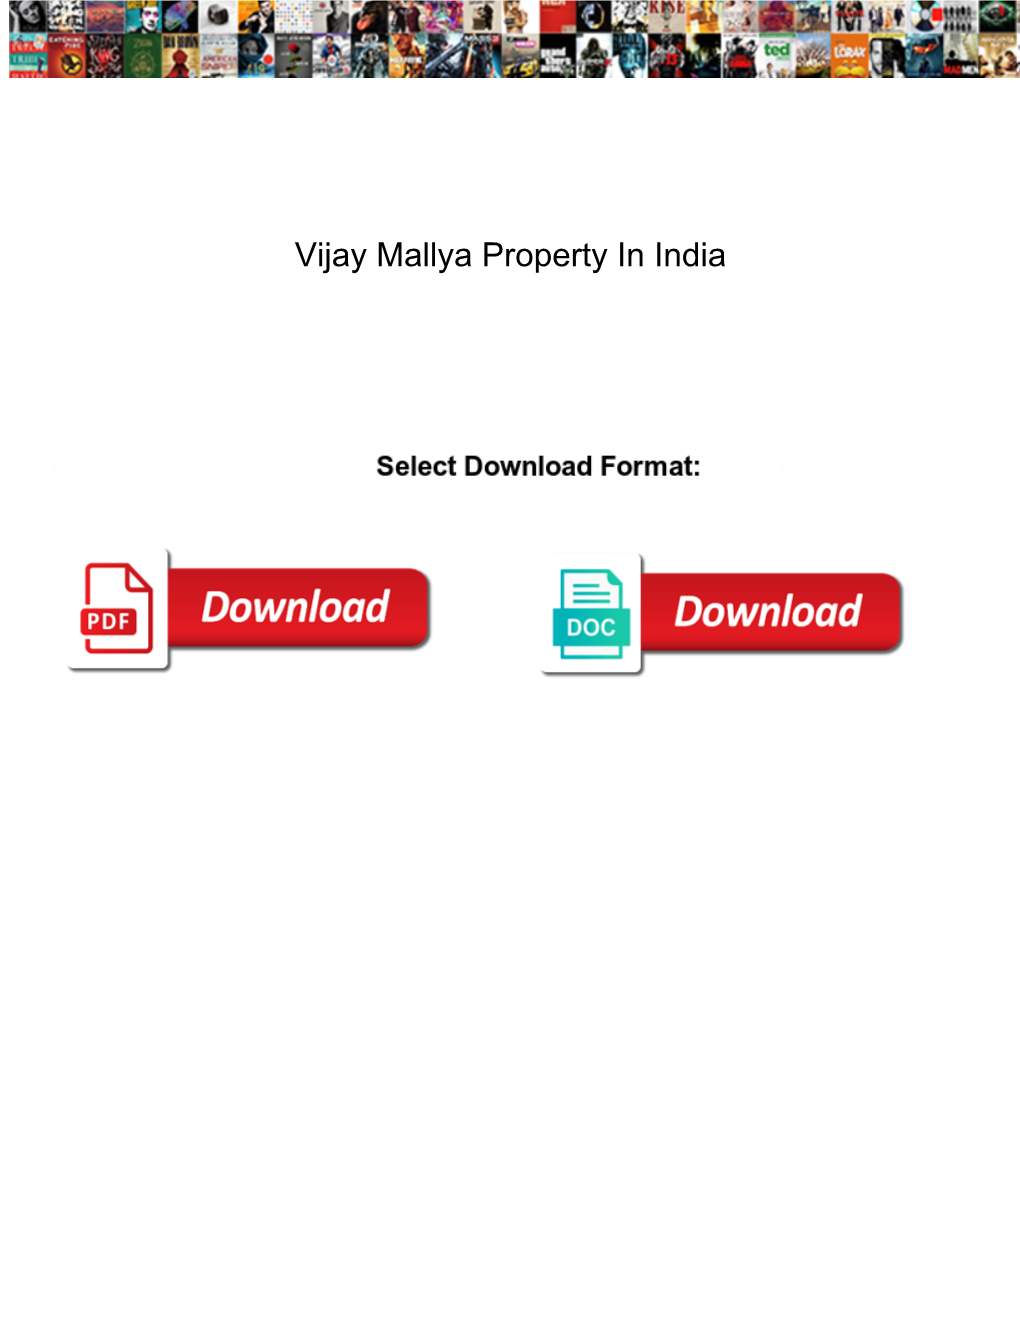 Vijay Mallya Property in India